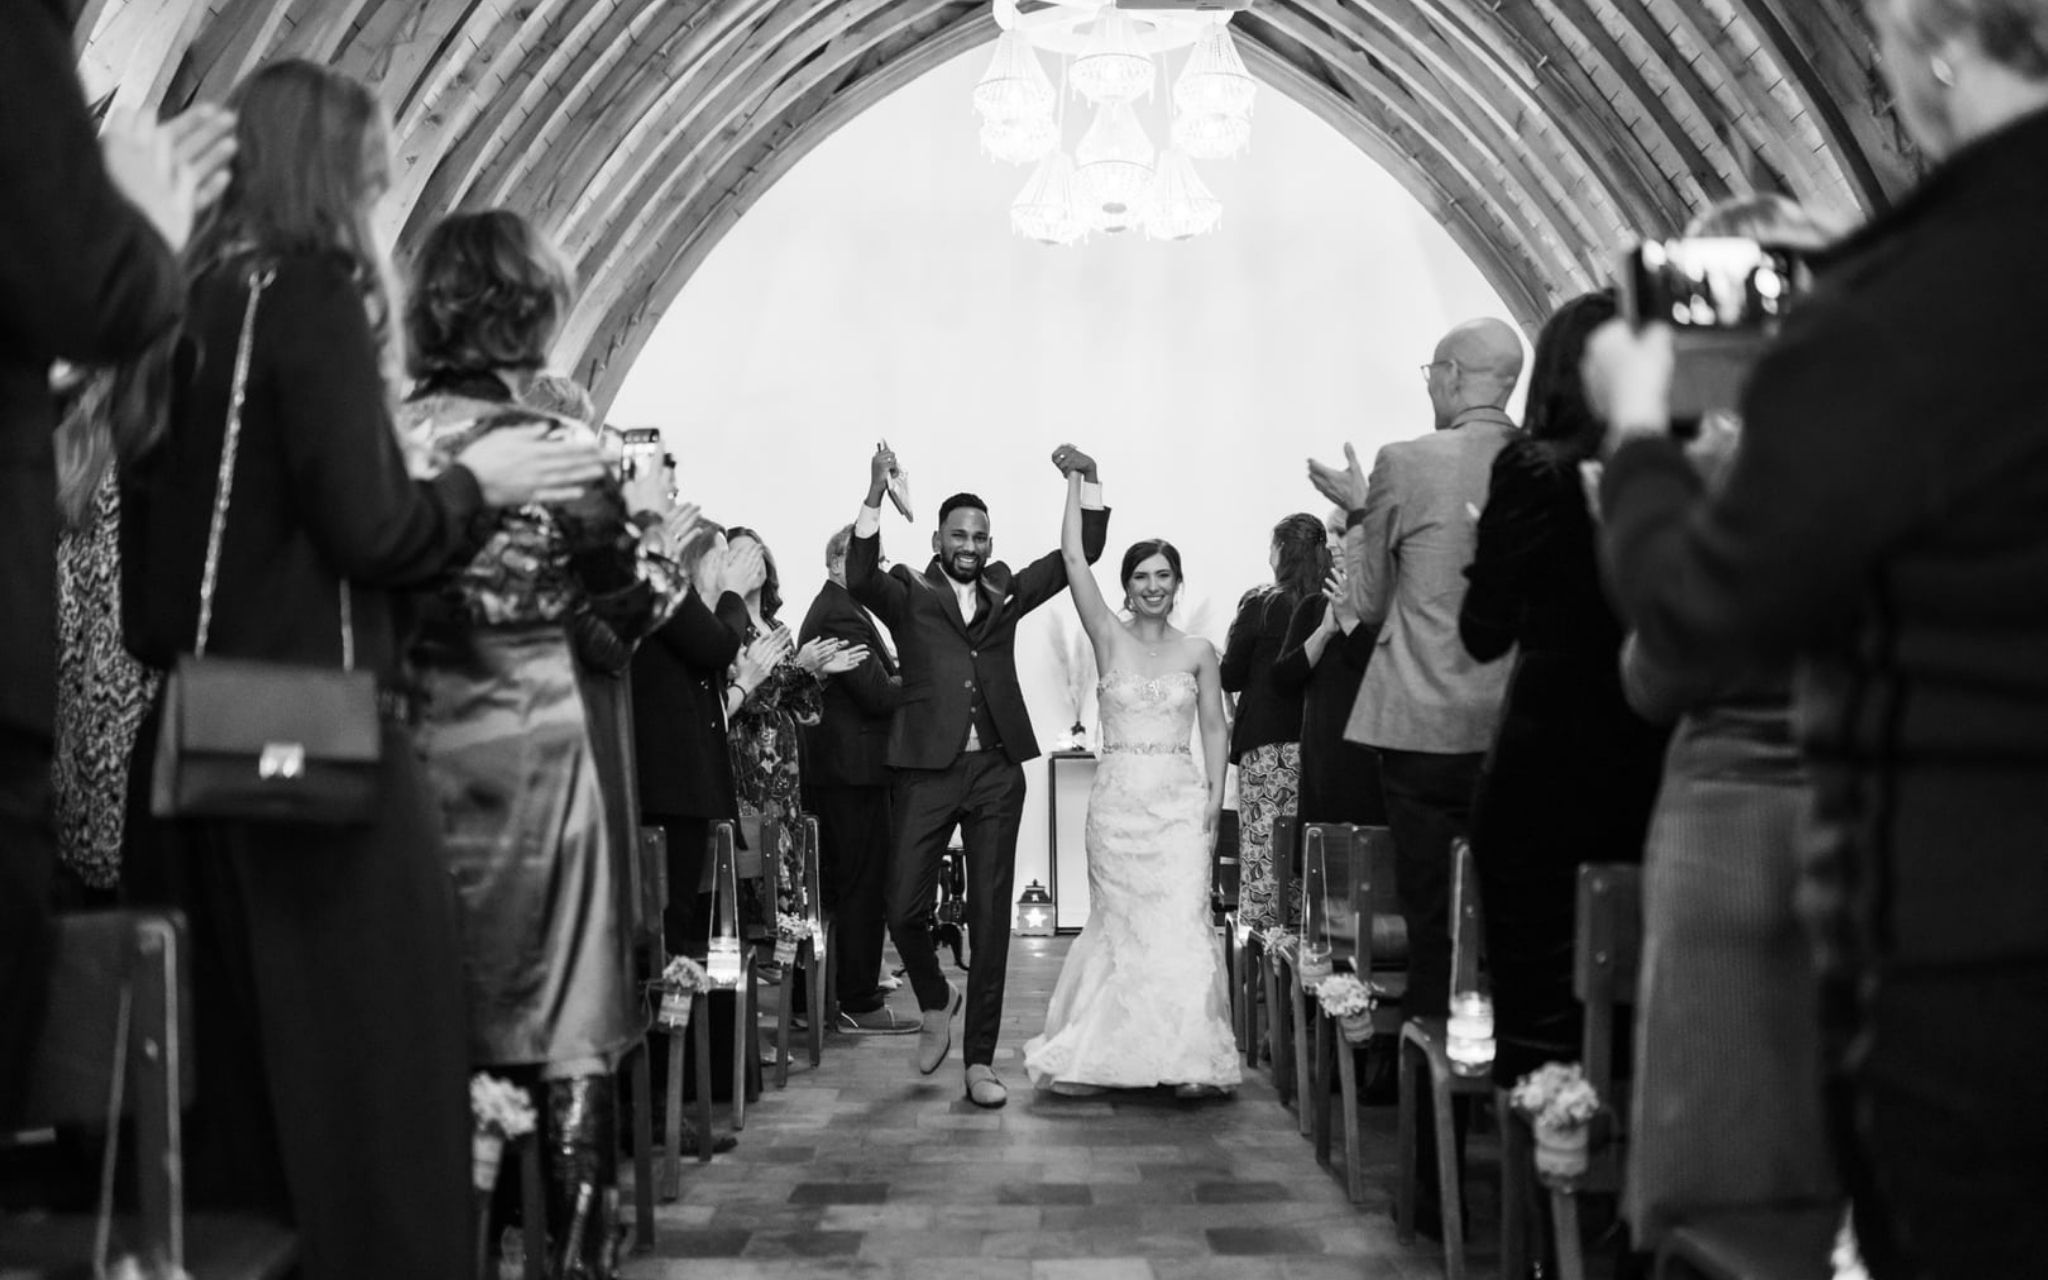 Huwelijksceremonie in de Ridderzaal